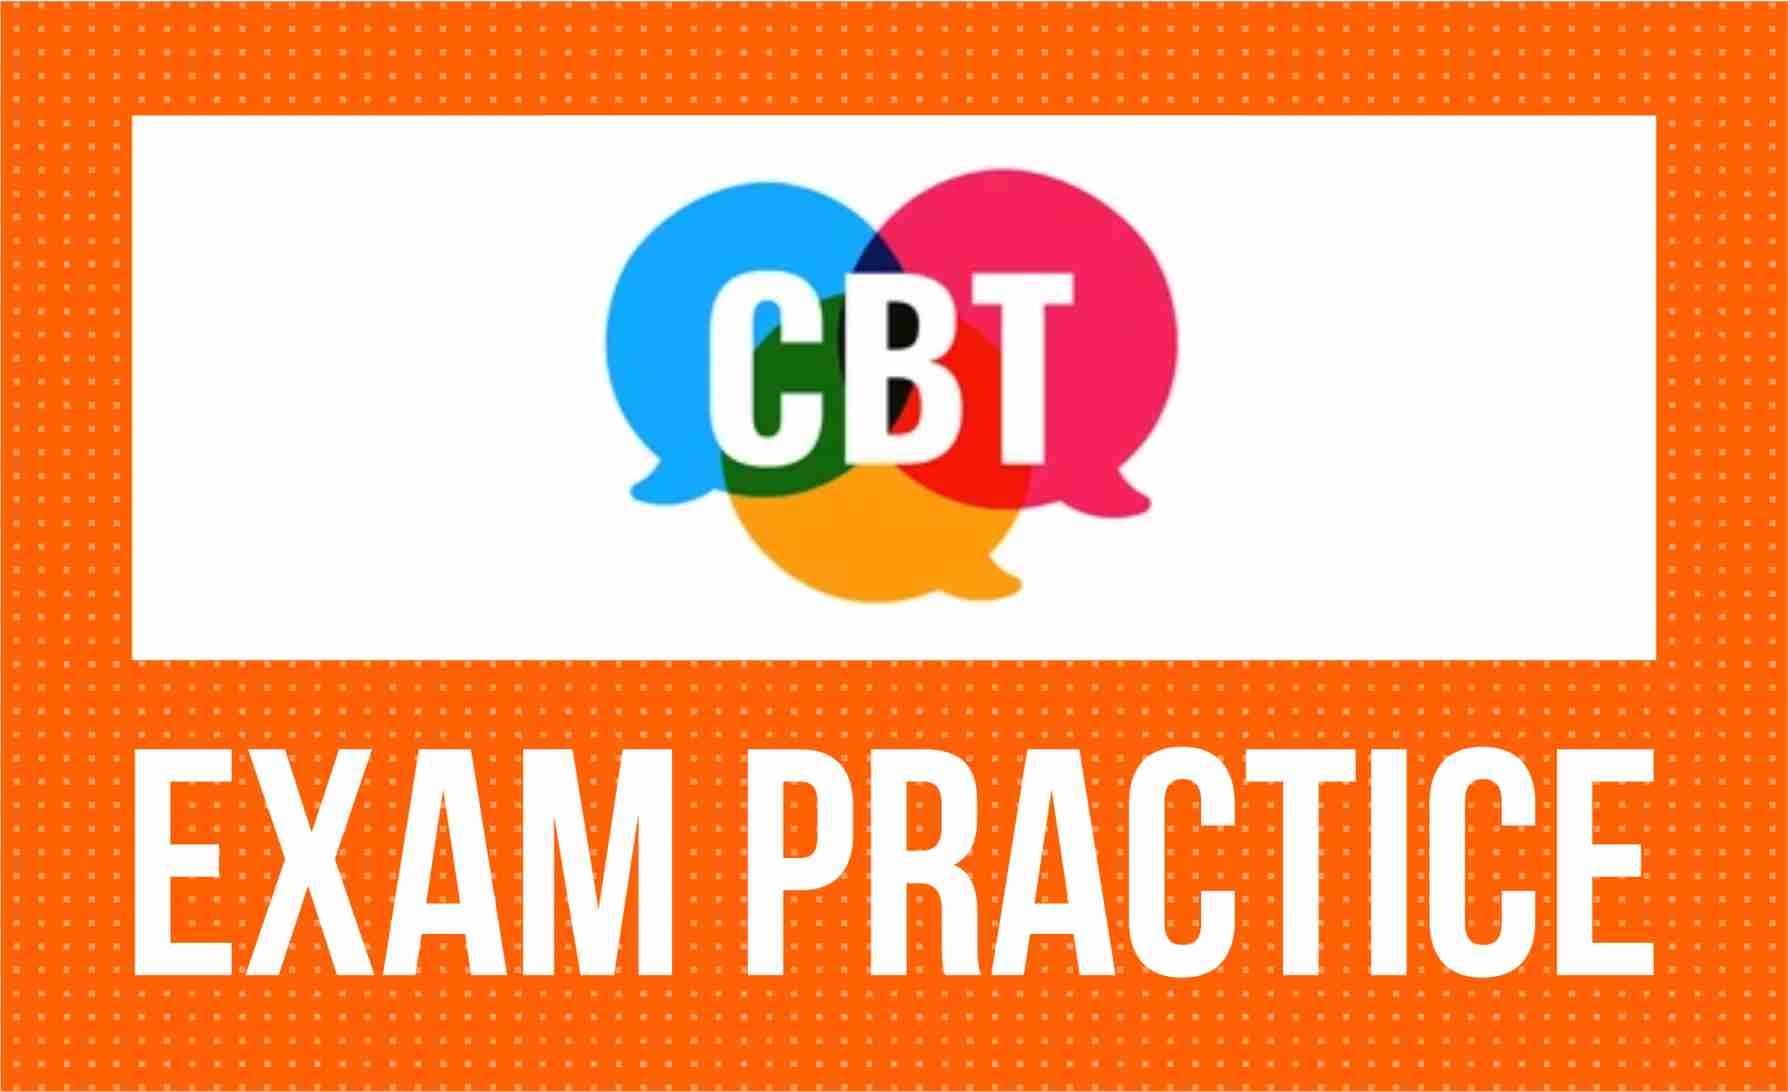 CBT Exam